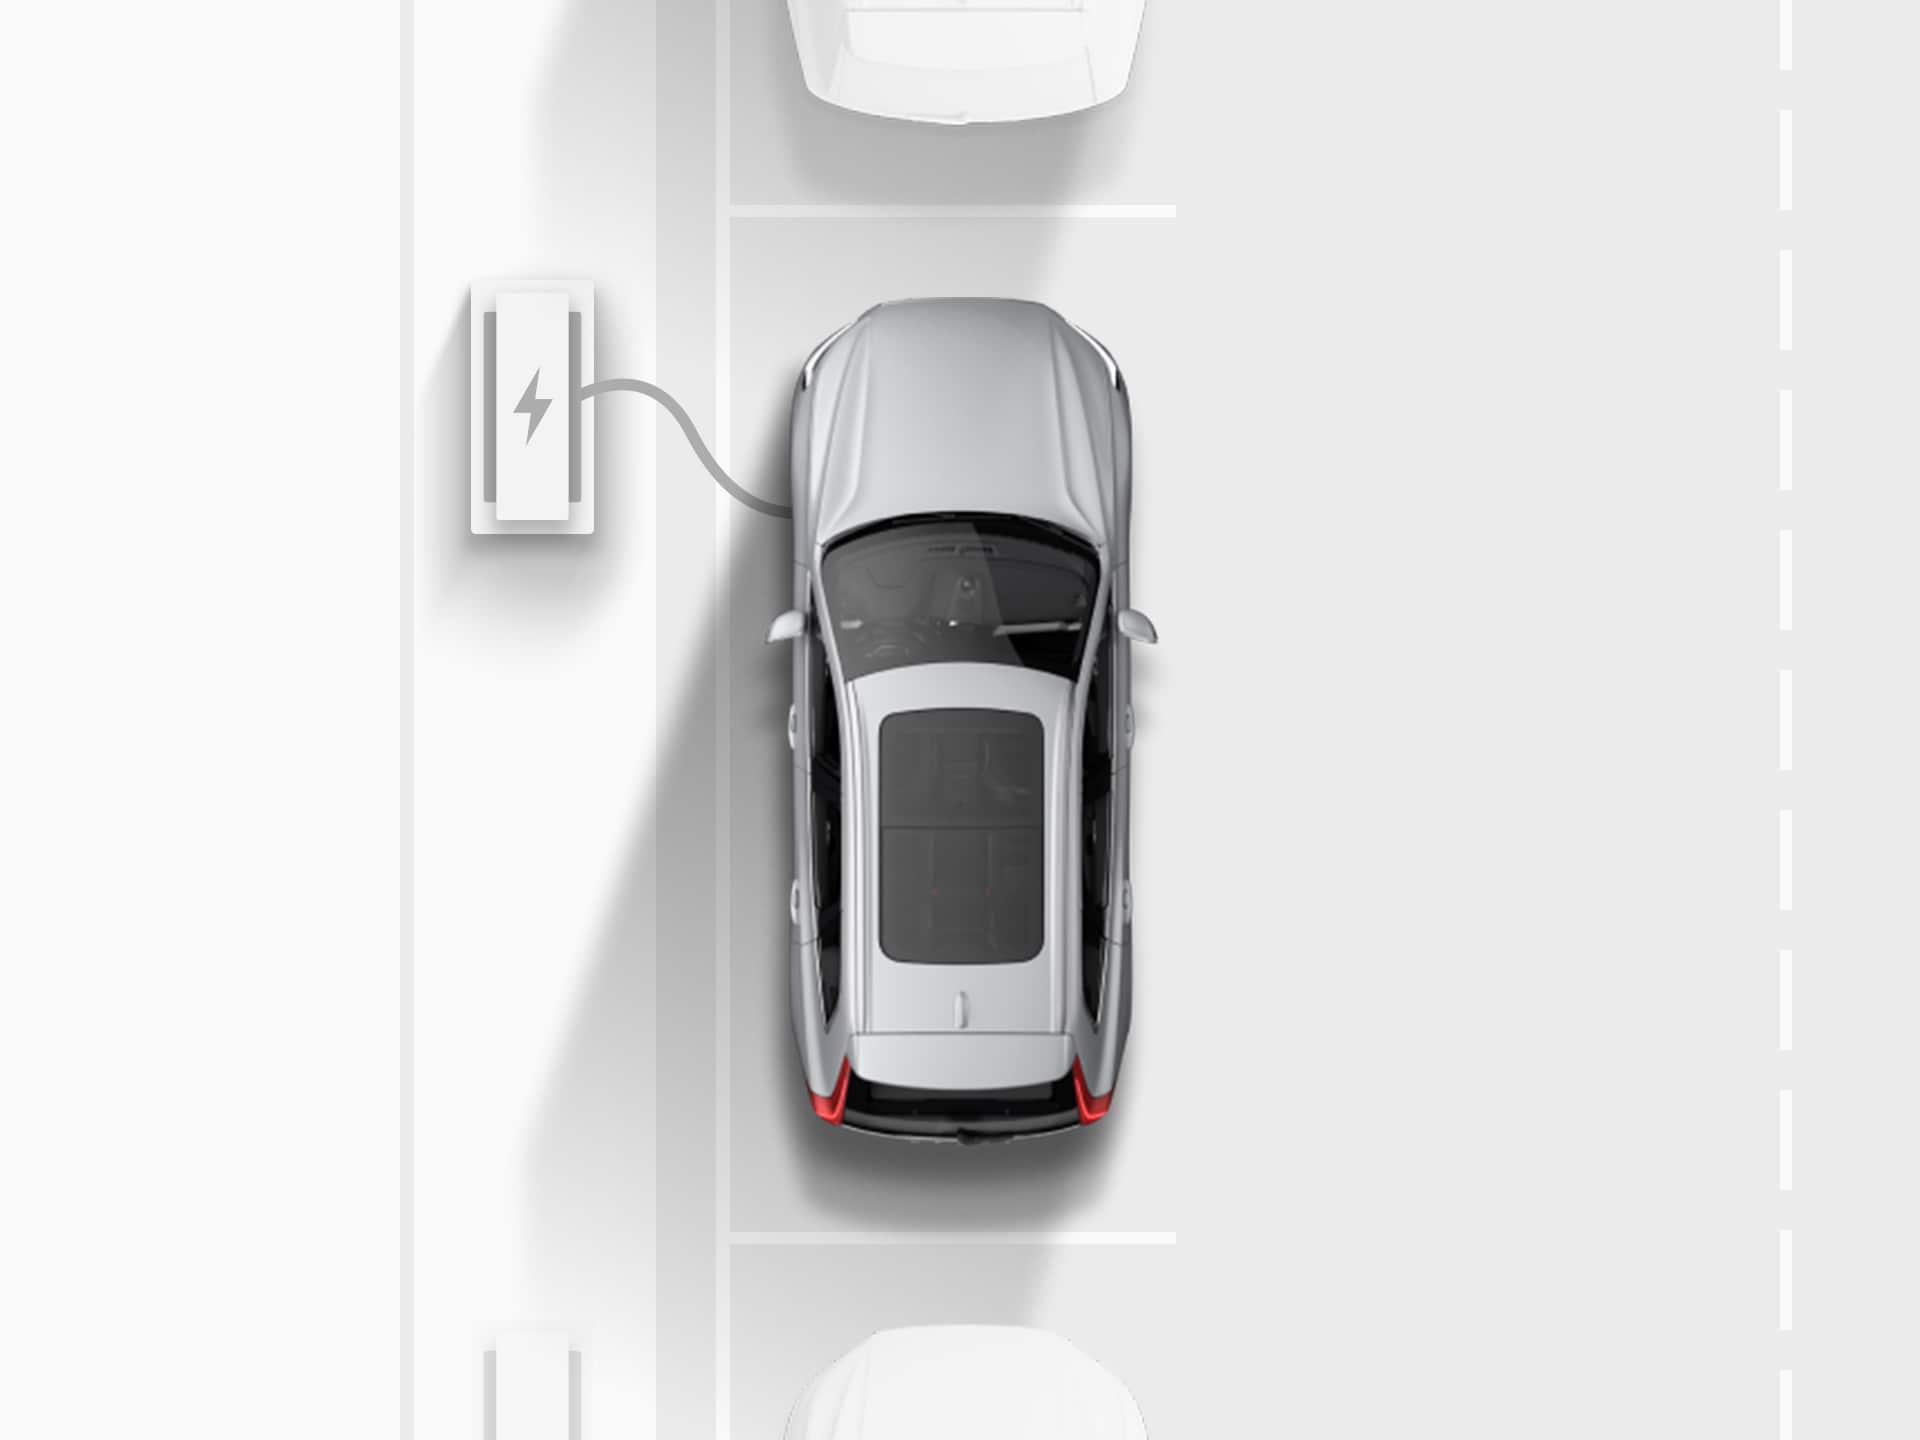 صورة رقمية من الأعلى لسيارة فولفو XC40 Recharge الرياضية متعددة الاستخدامات الكهربائية النقية الفضية المتصلة بمحطة شحن أثناء ركنها بشكل متوازٍ في شارع عام.